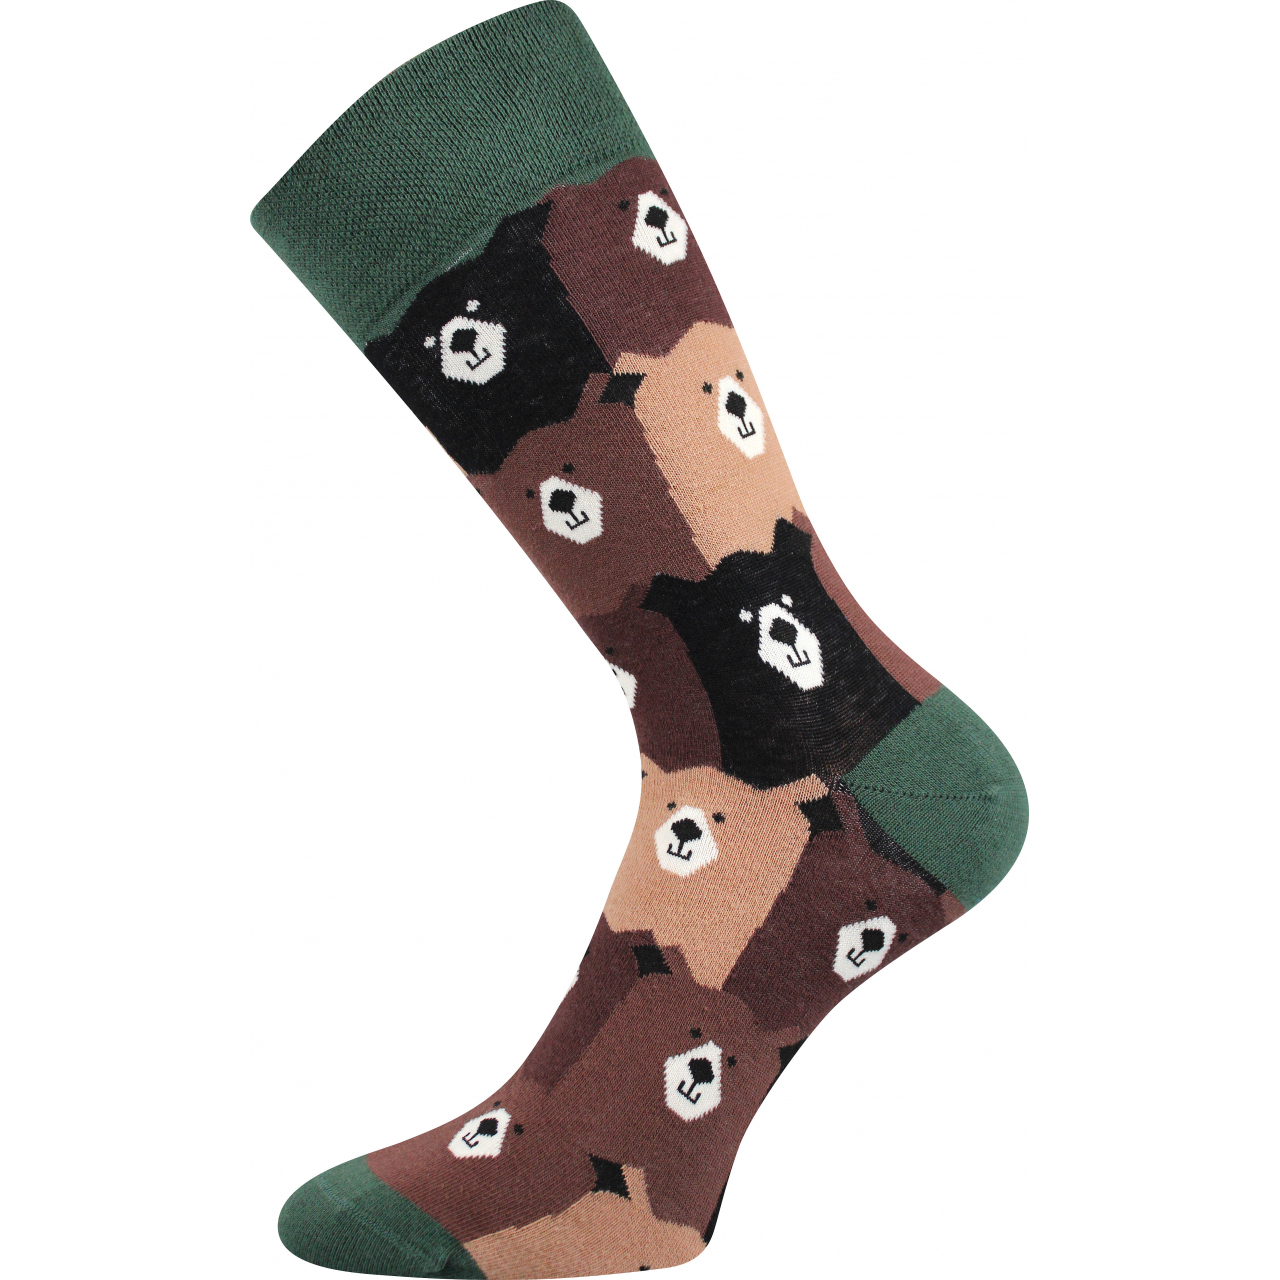 Ponožky společenské unisex Lonka Twidor Medvědi - hnědé-zelené, 39-42